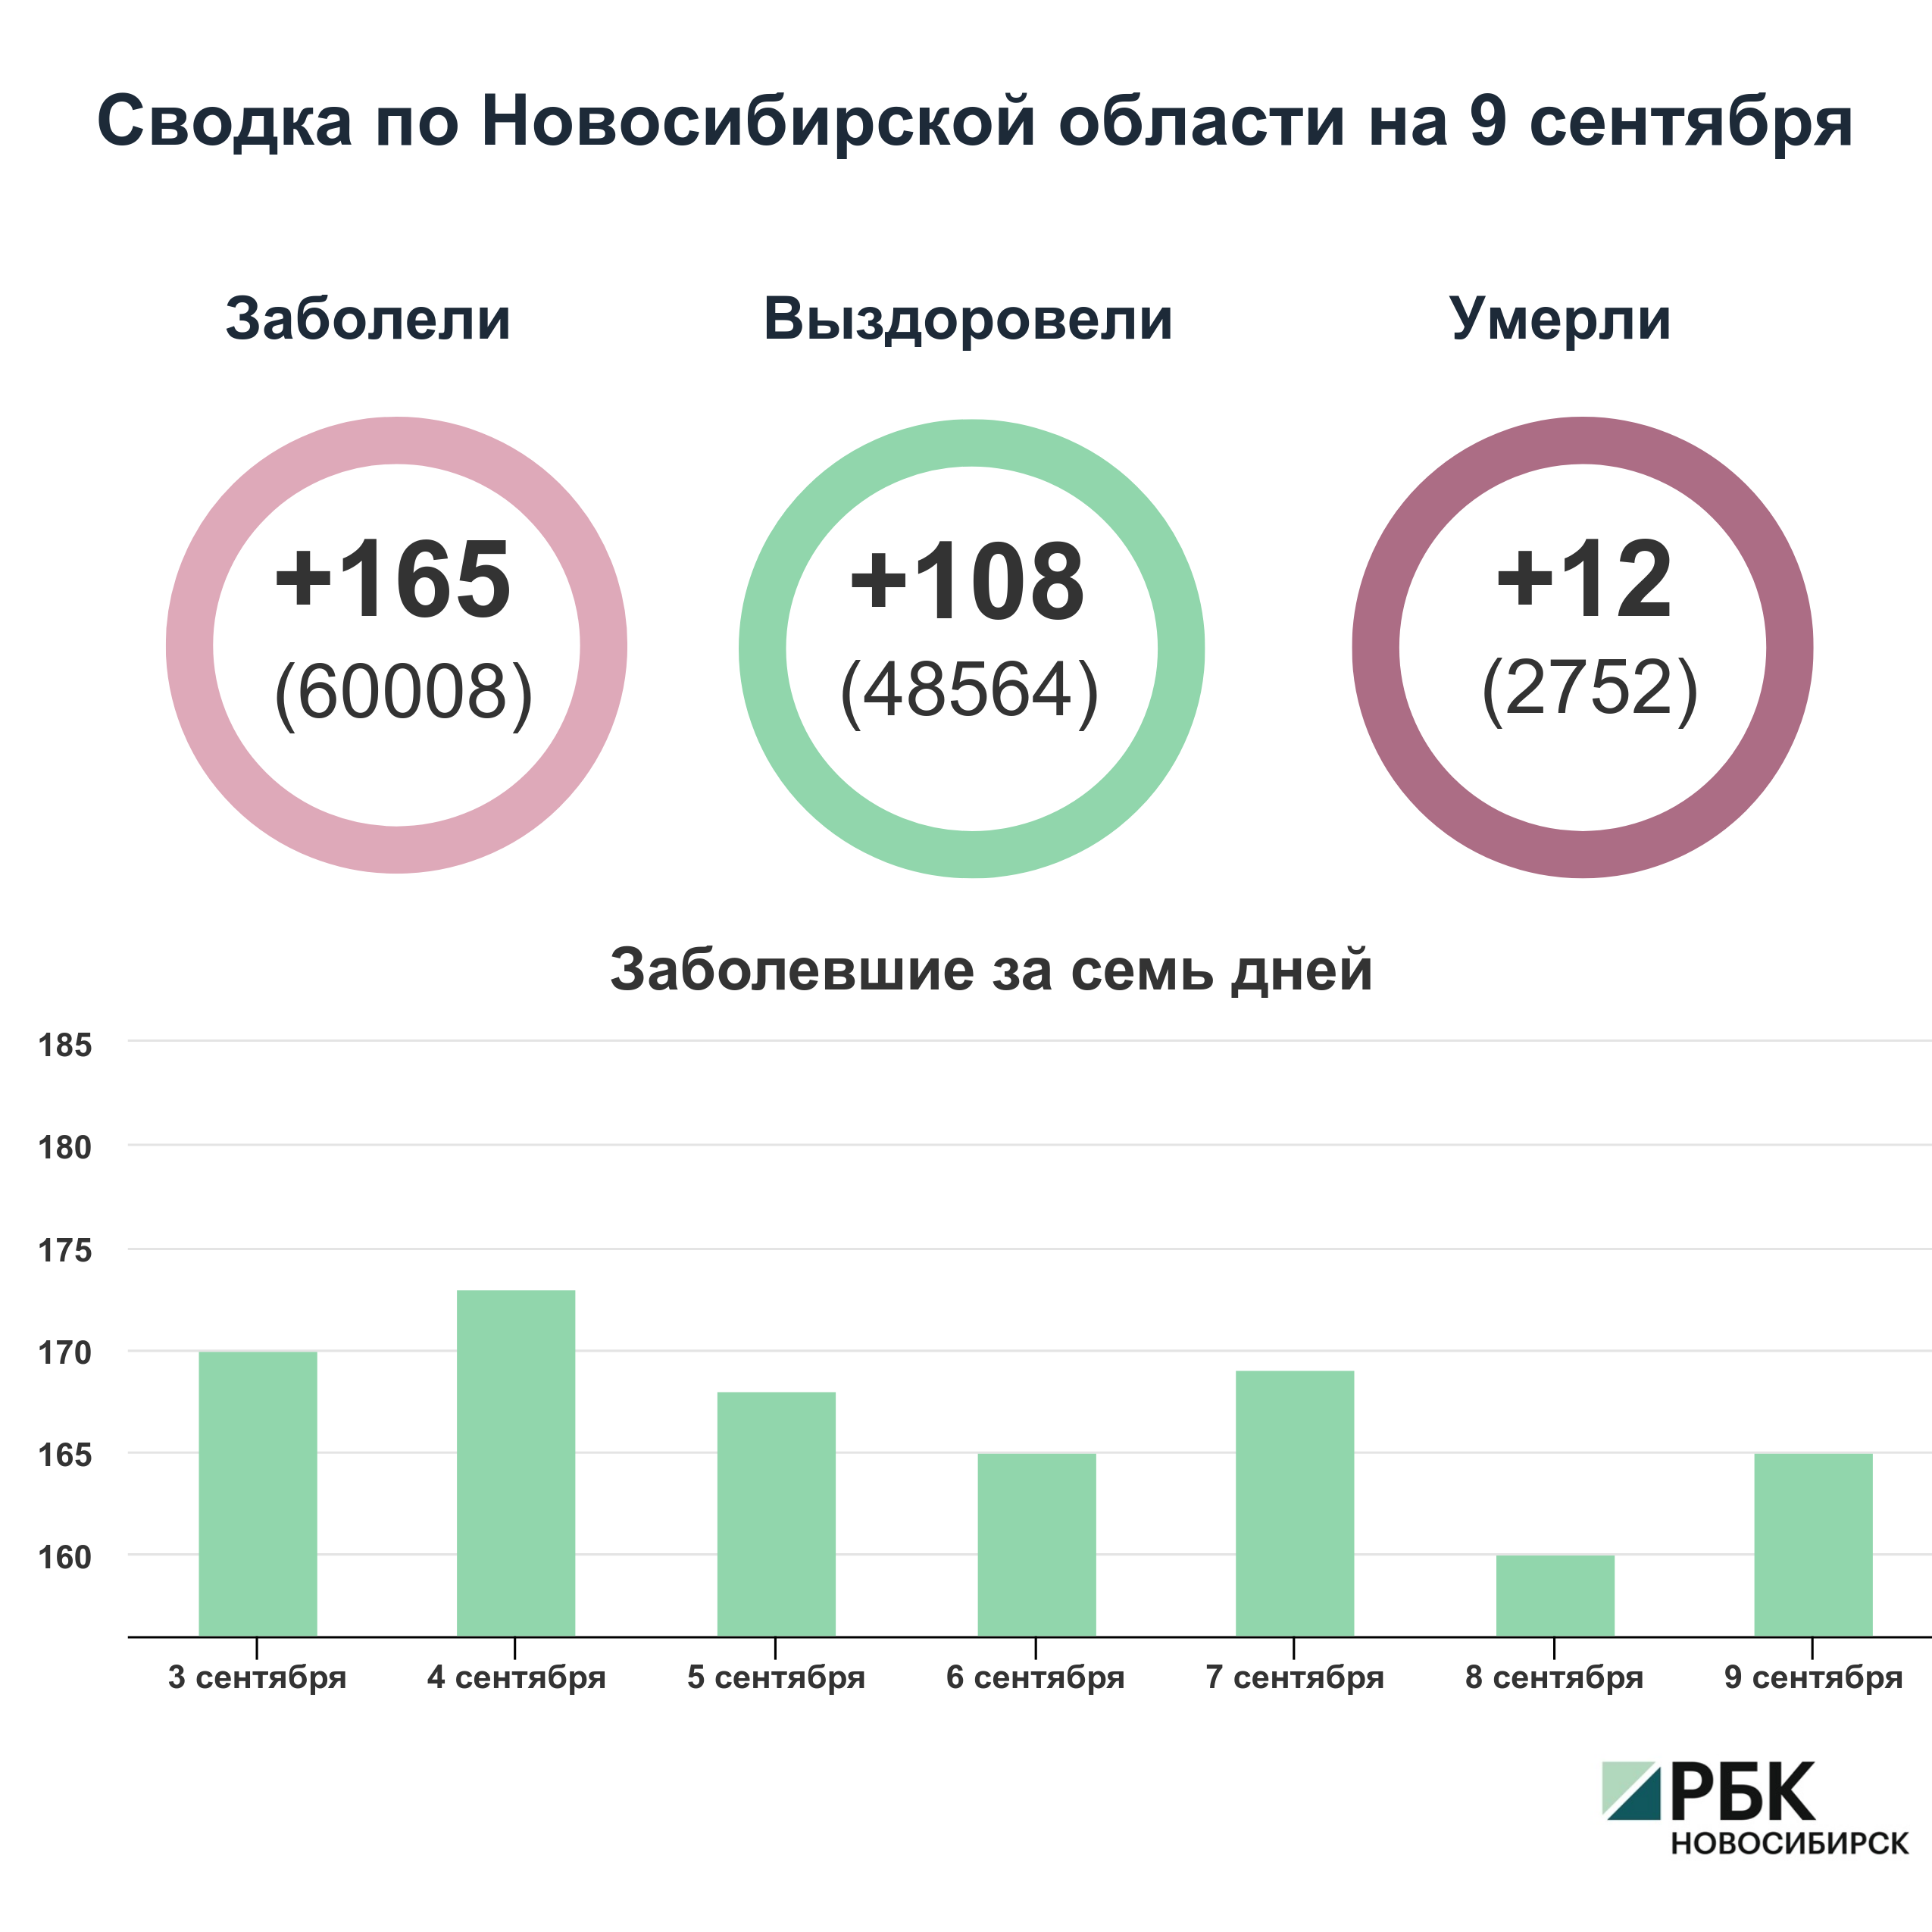 Коронавирус в Новосибирске: сводка на 9 сентября